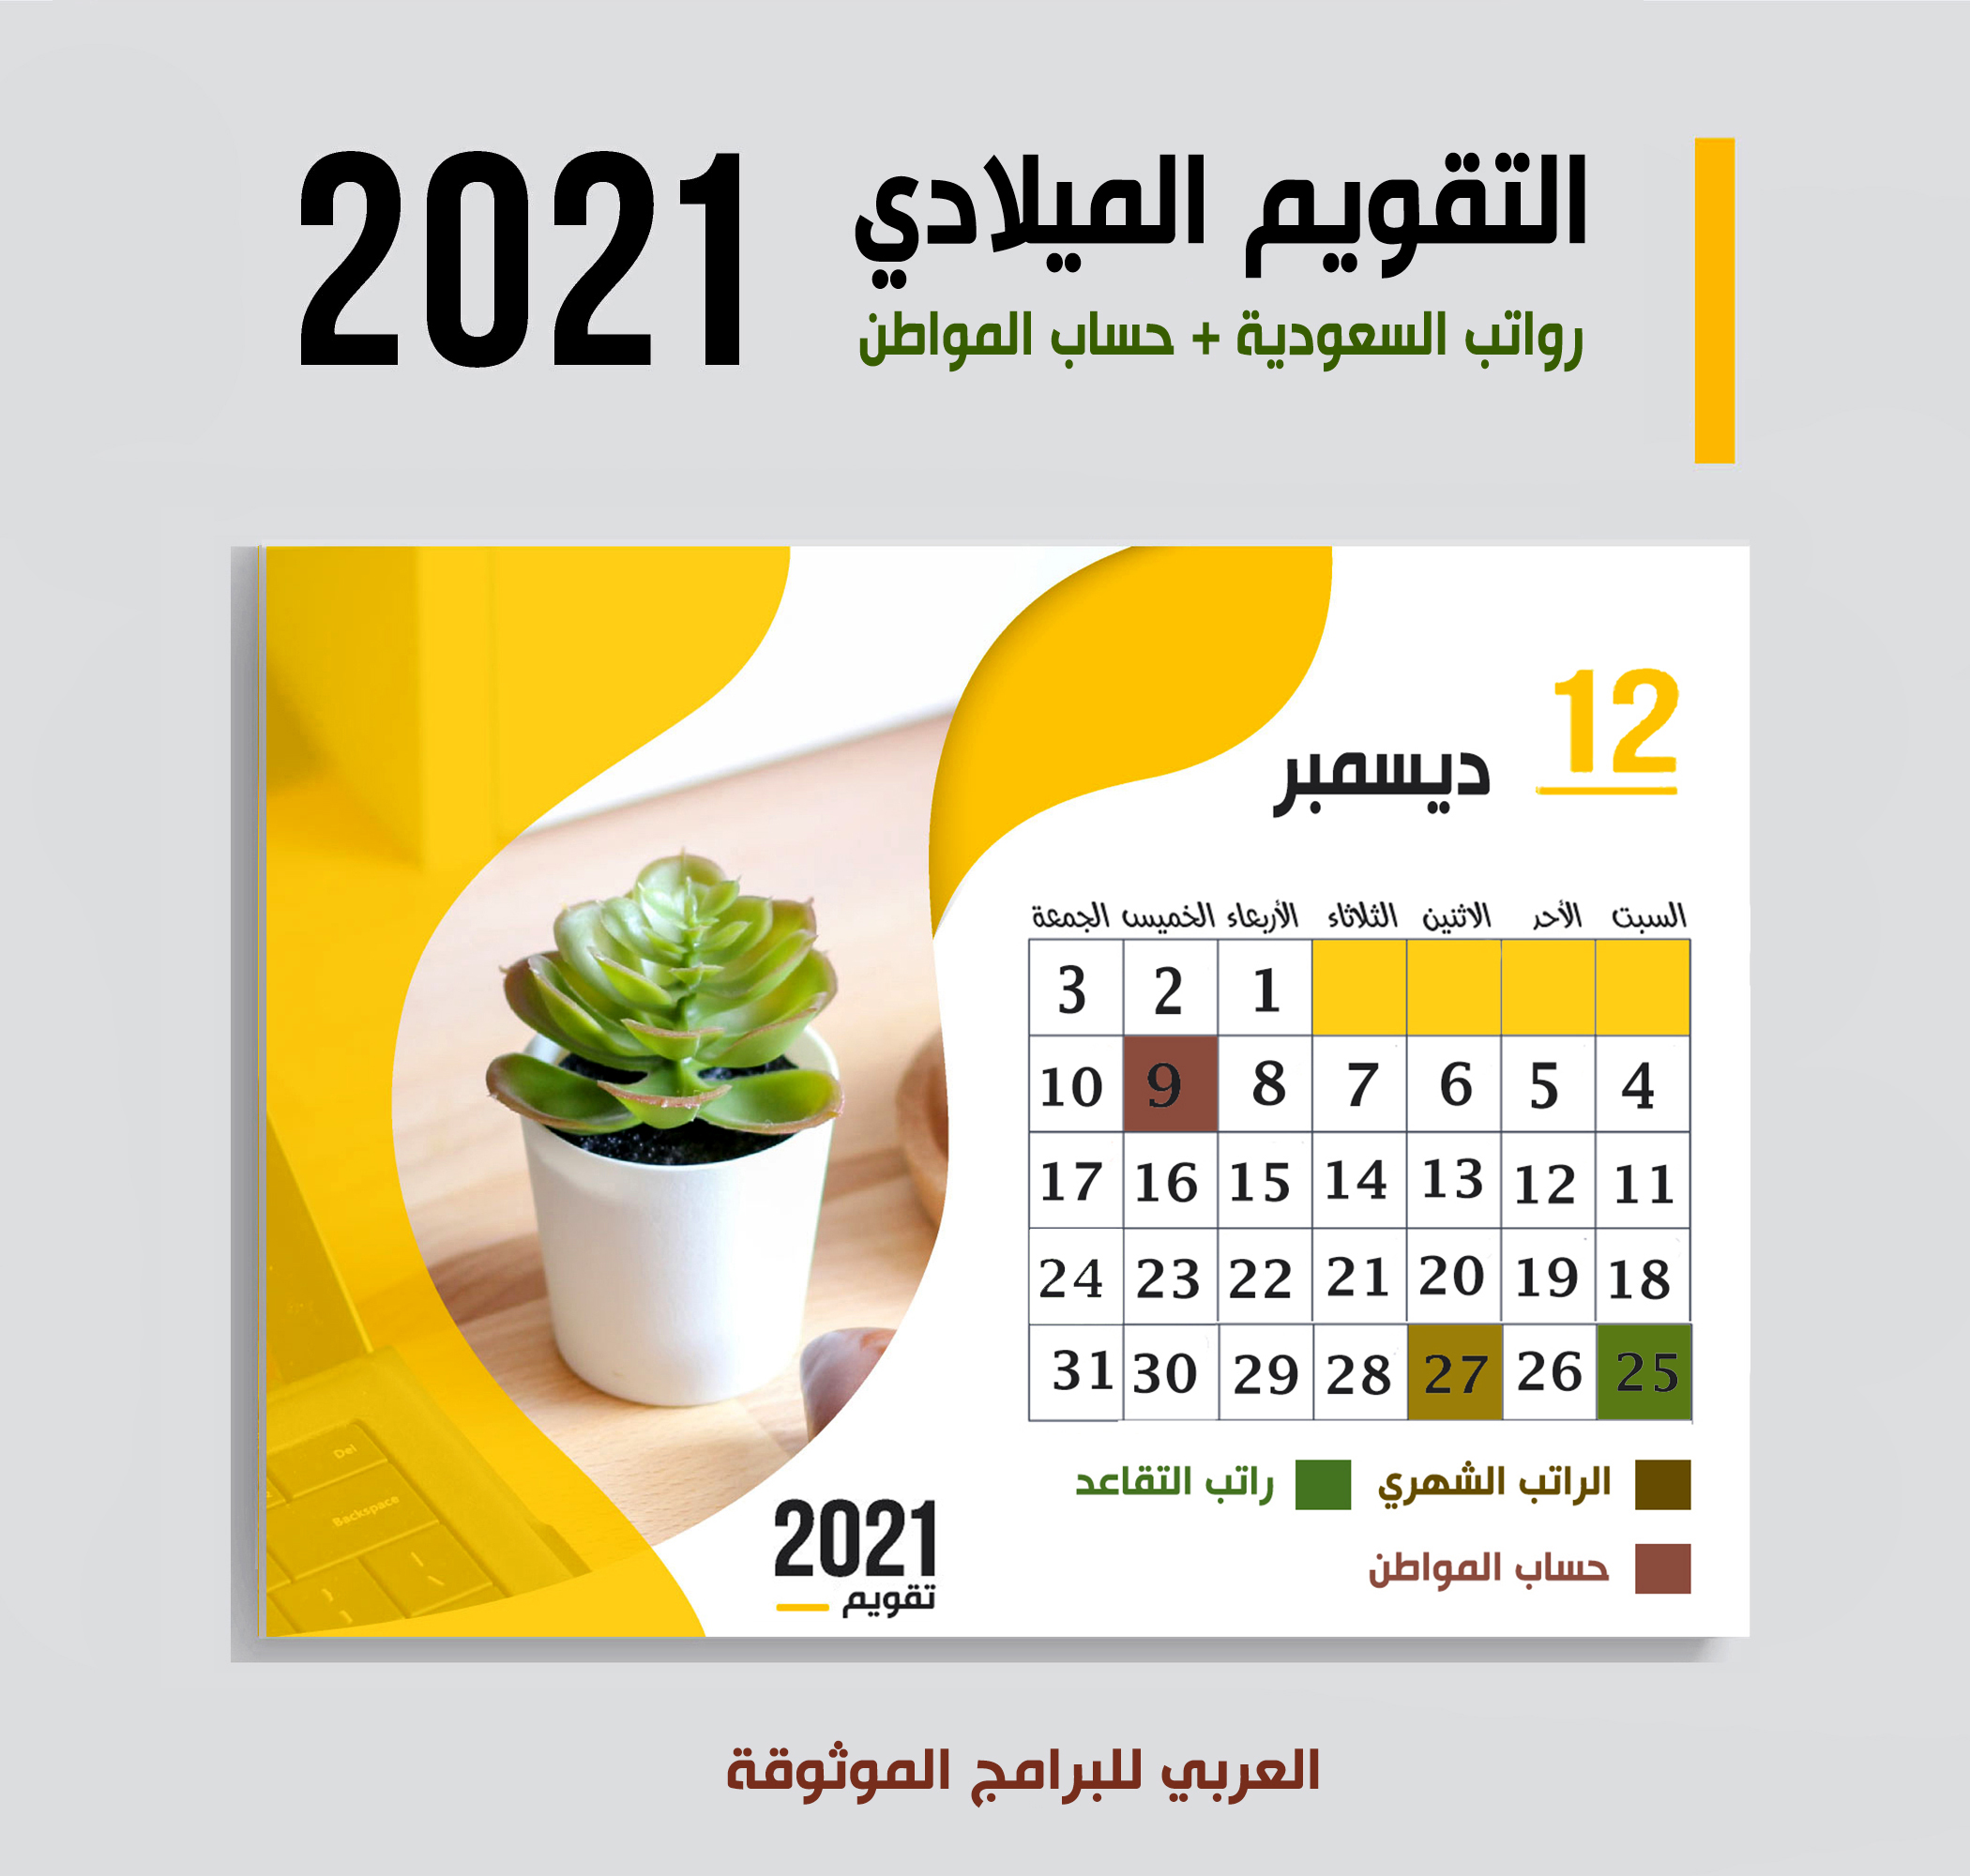 موعد صرف رواتب السعودية حسب التقويم الميلادي 2021 موعد حساب المواطن + صرف رواتب التقاعد